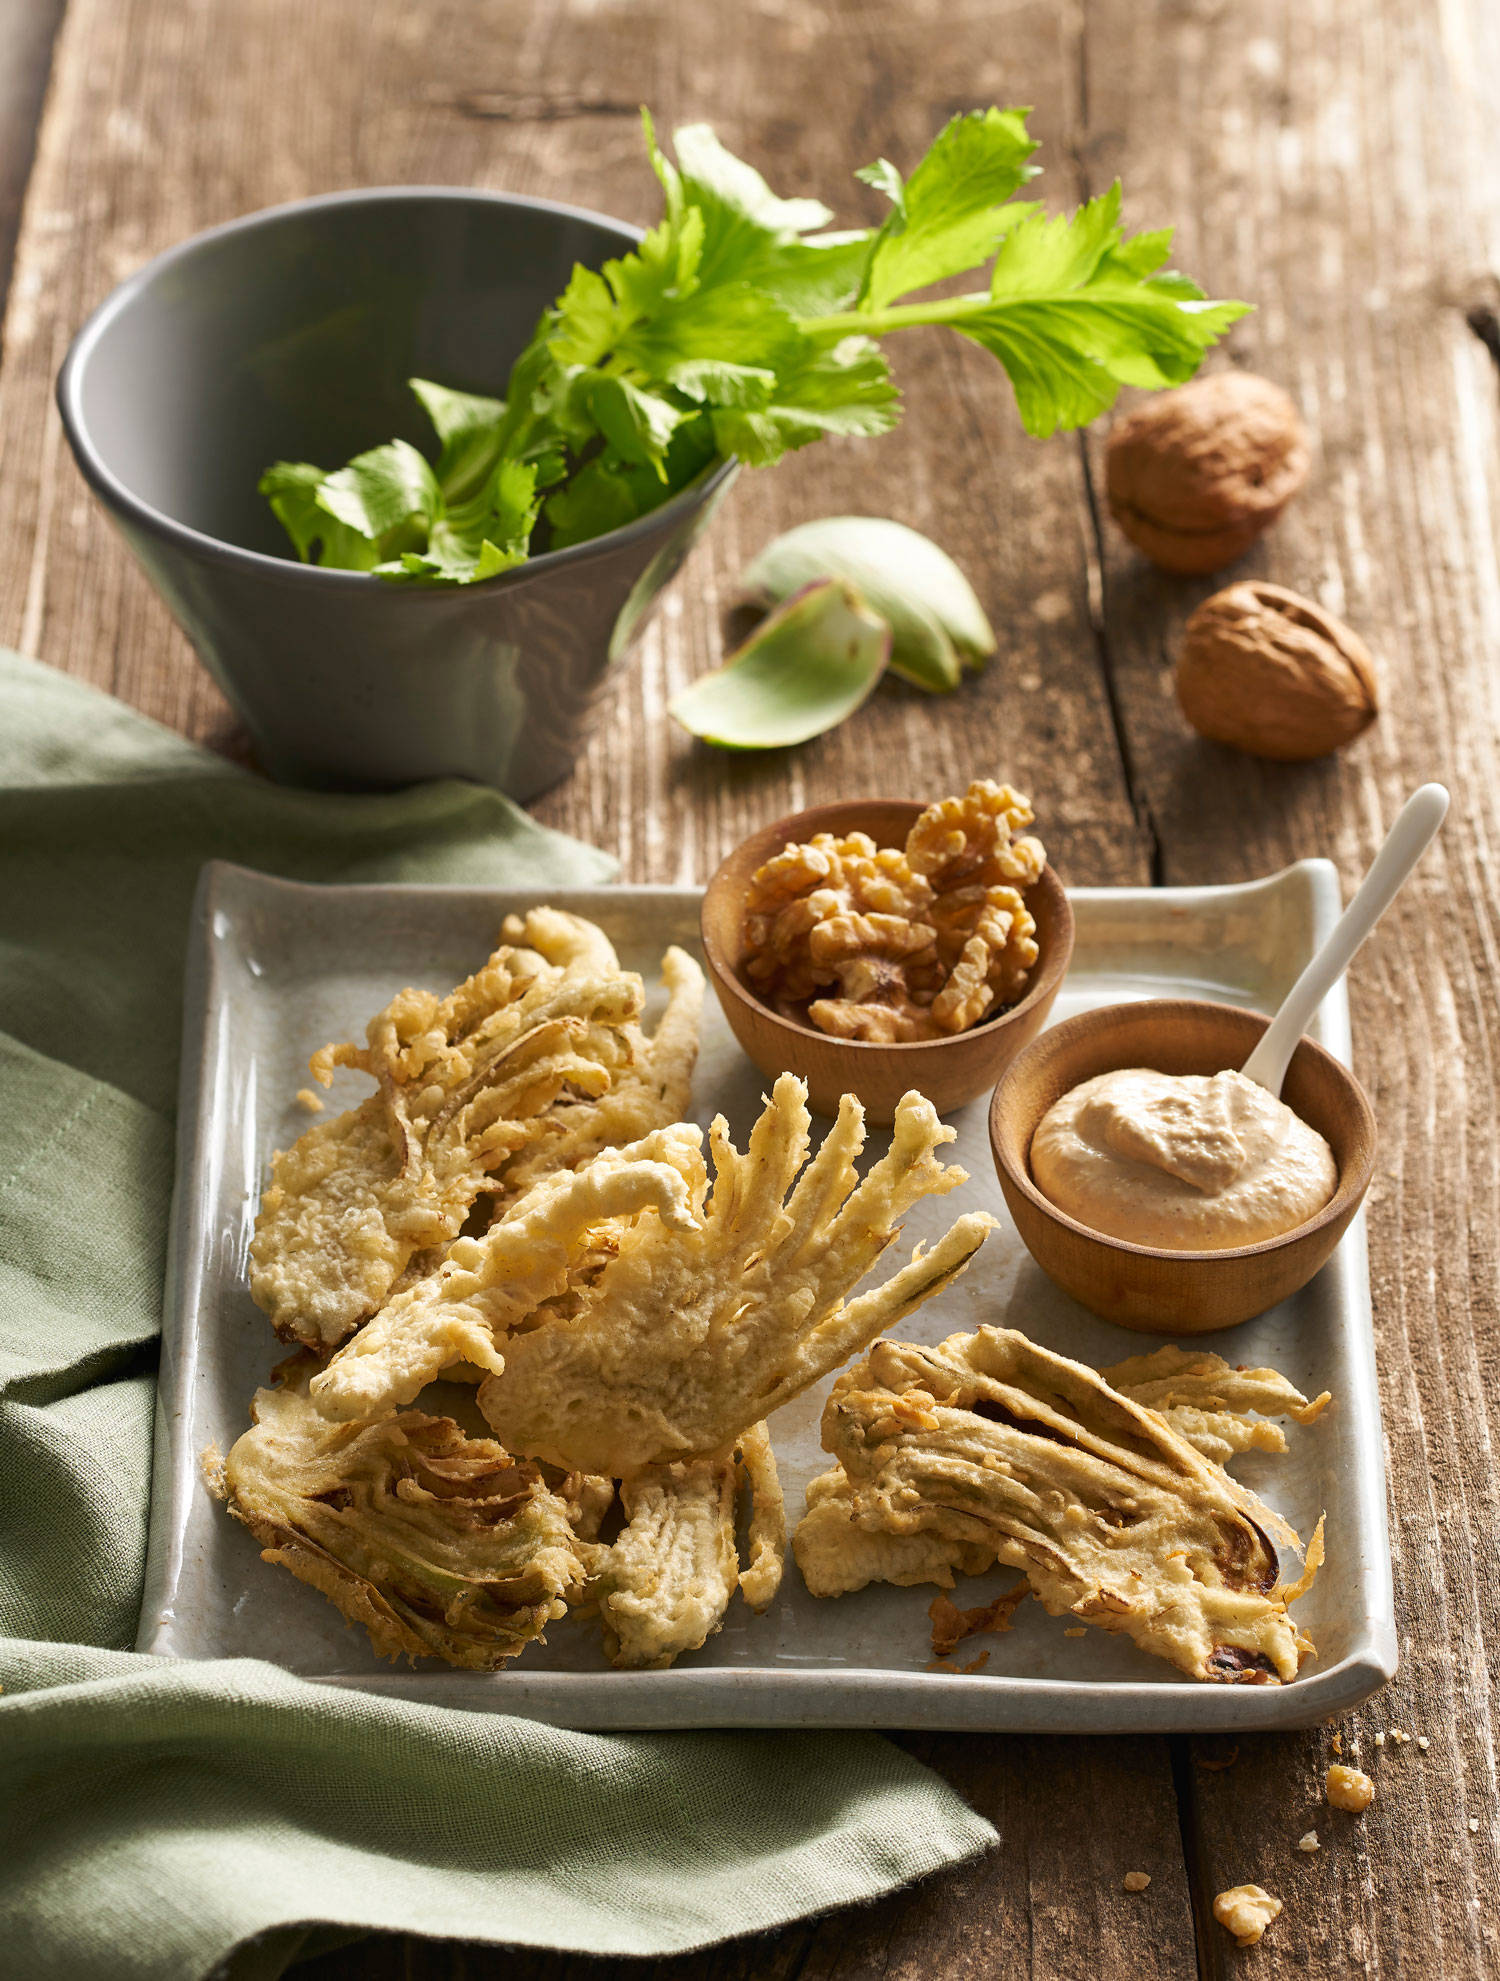 Unas alcachofas rebozadas y fritas en tempura.